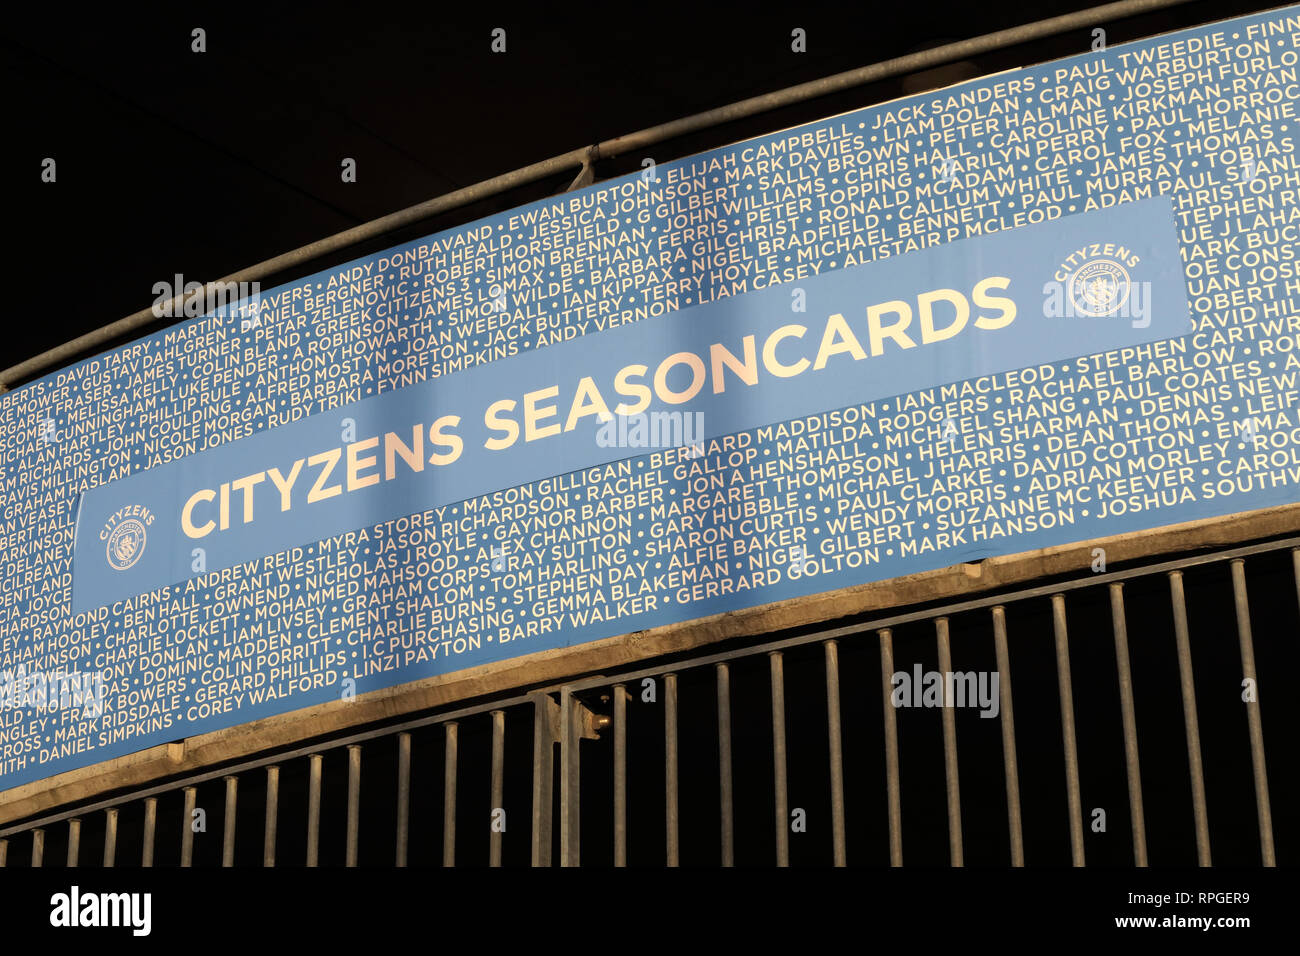 MCFC Manchester City, Etihad Stadium, Cityzens, Seasoncards, cartes, billets de saison Football Club Banque D'Images